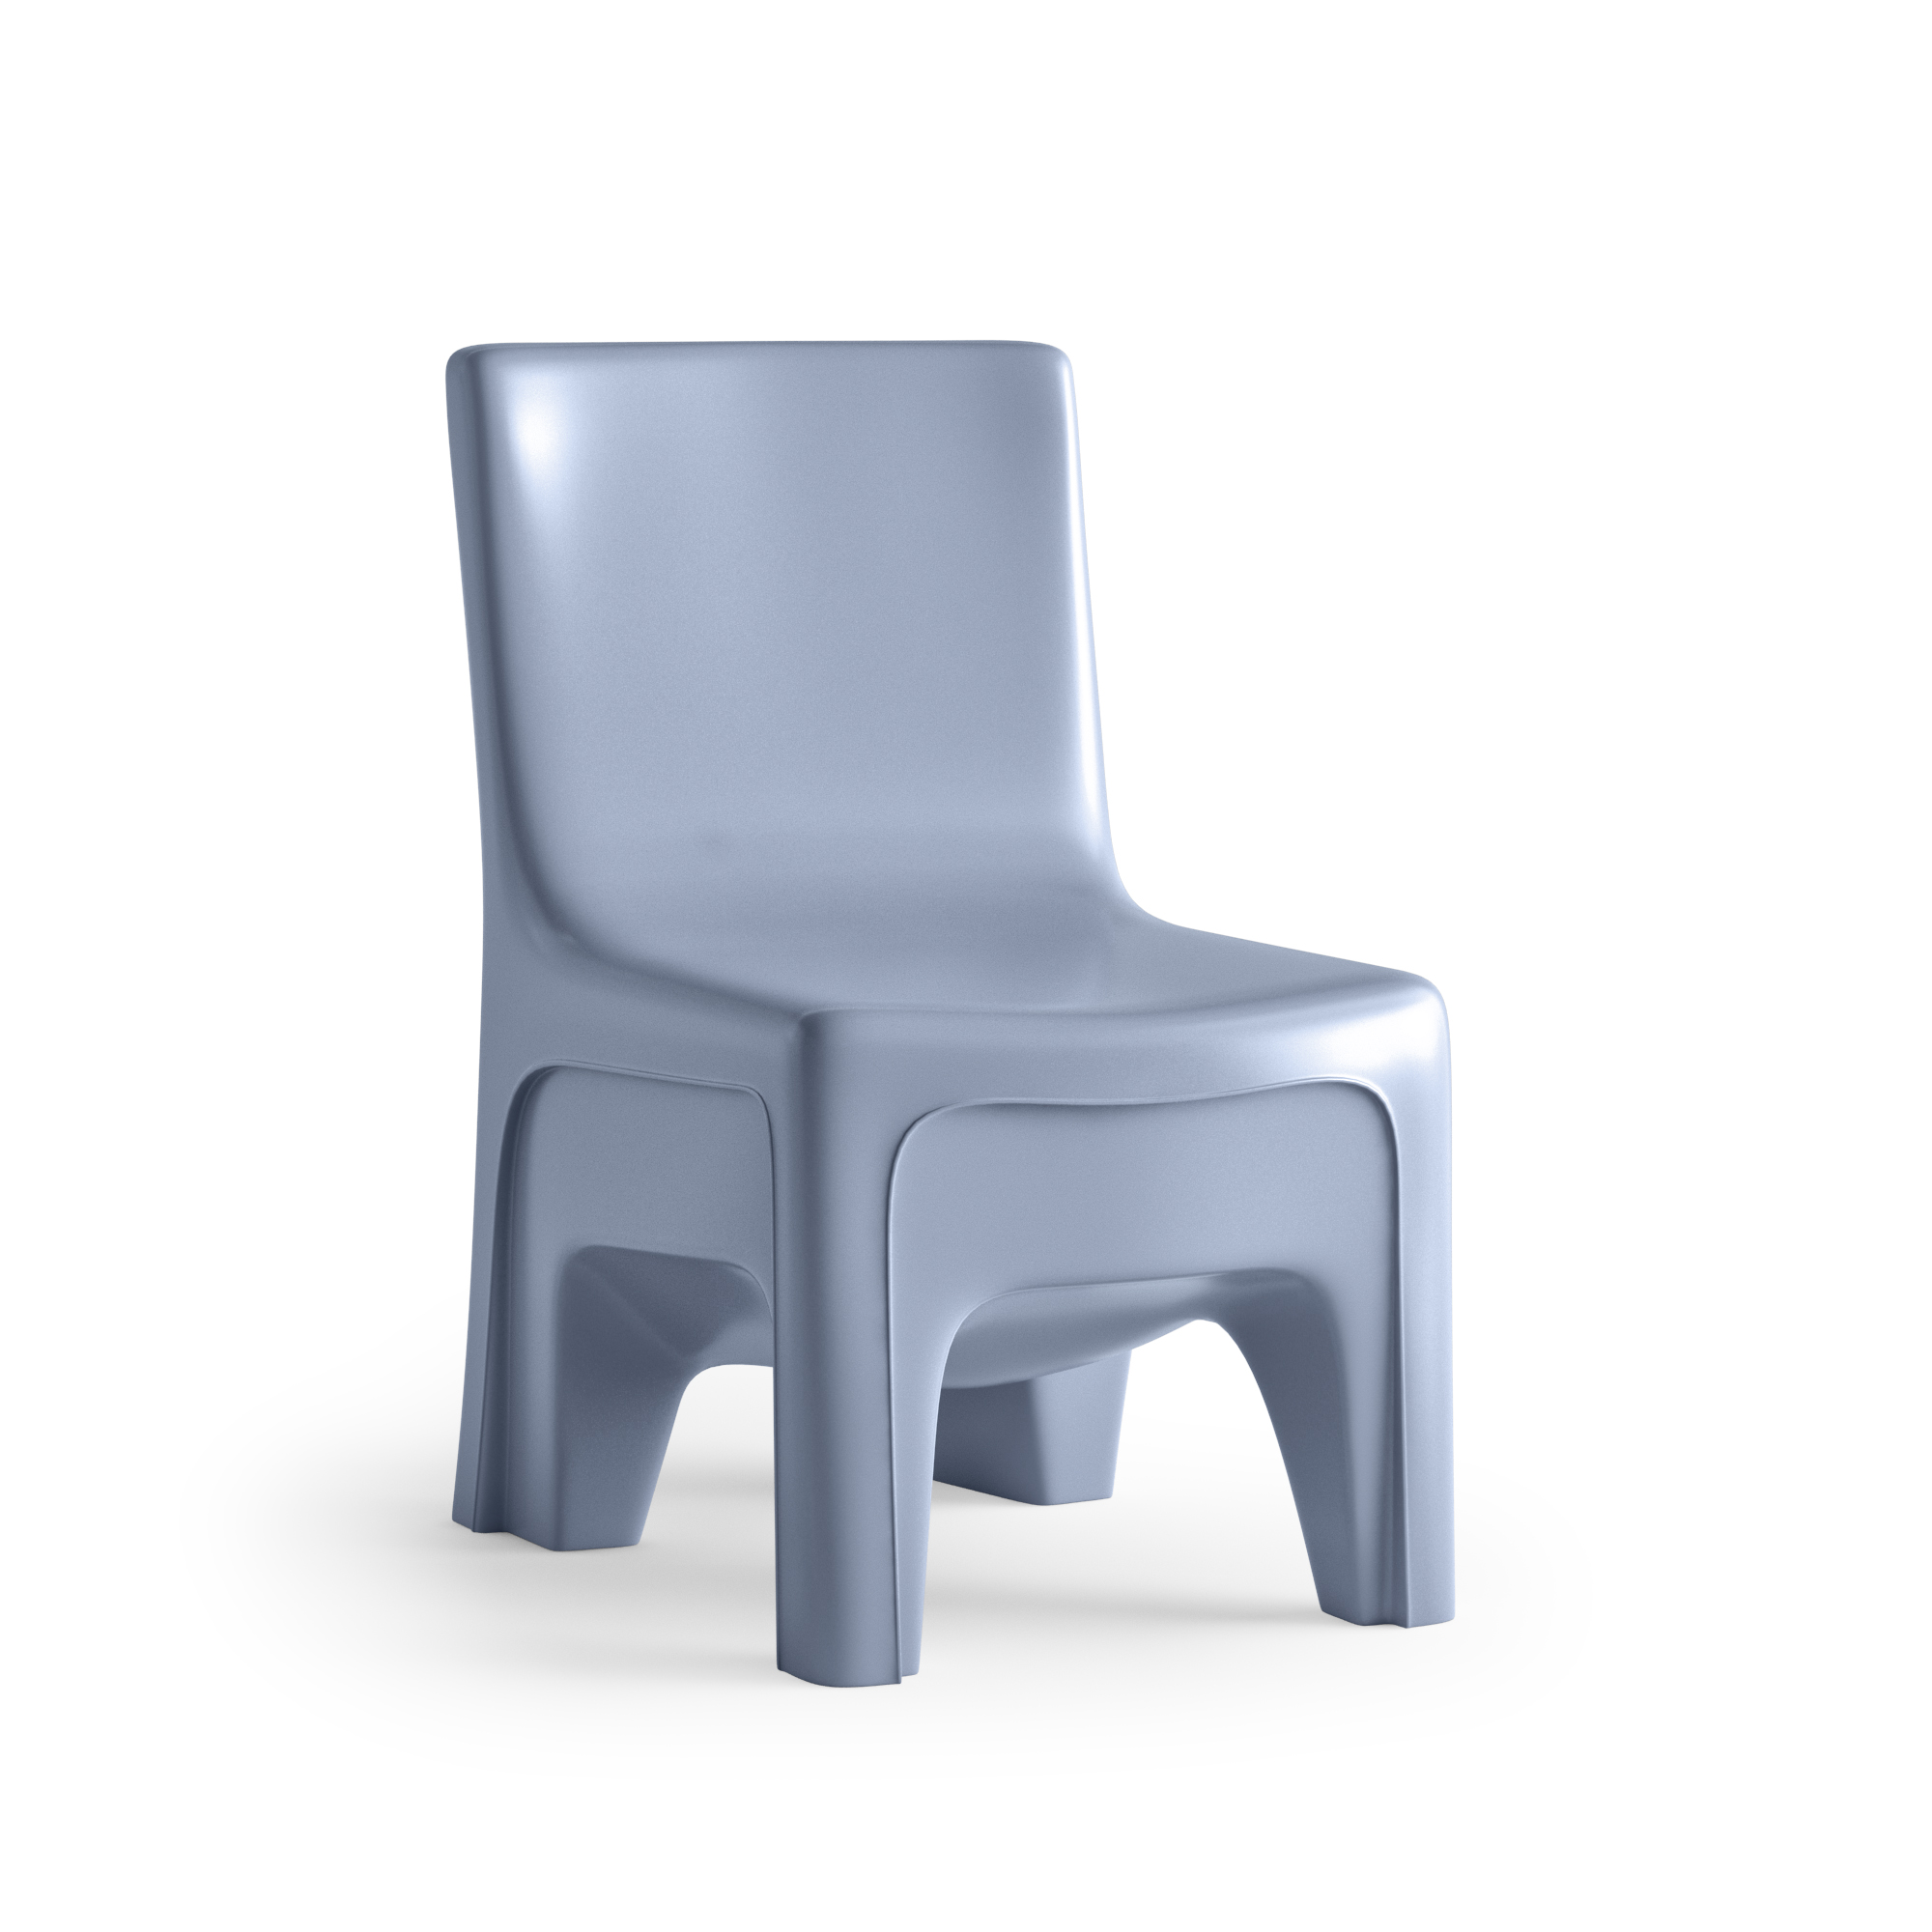 Duratough Chair